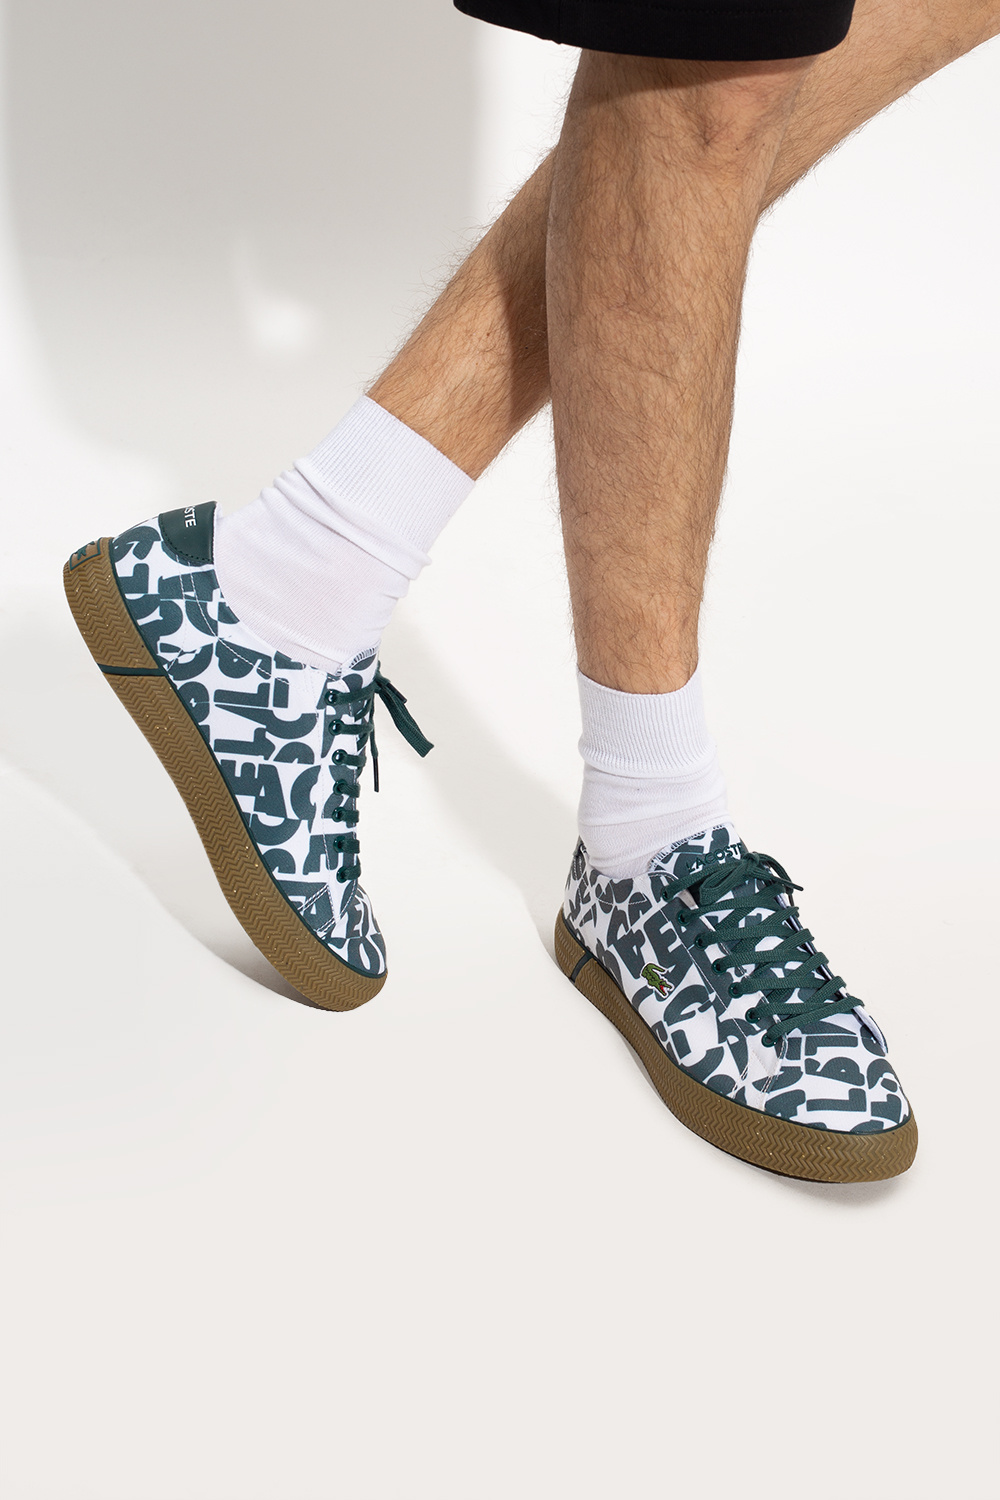 lacoste Footpatrol ‘Gripshot’ sneakers